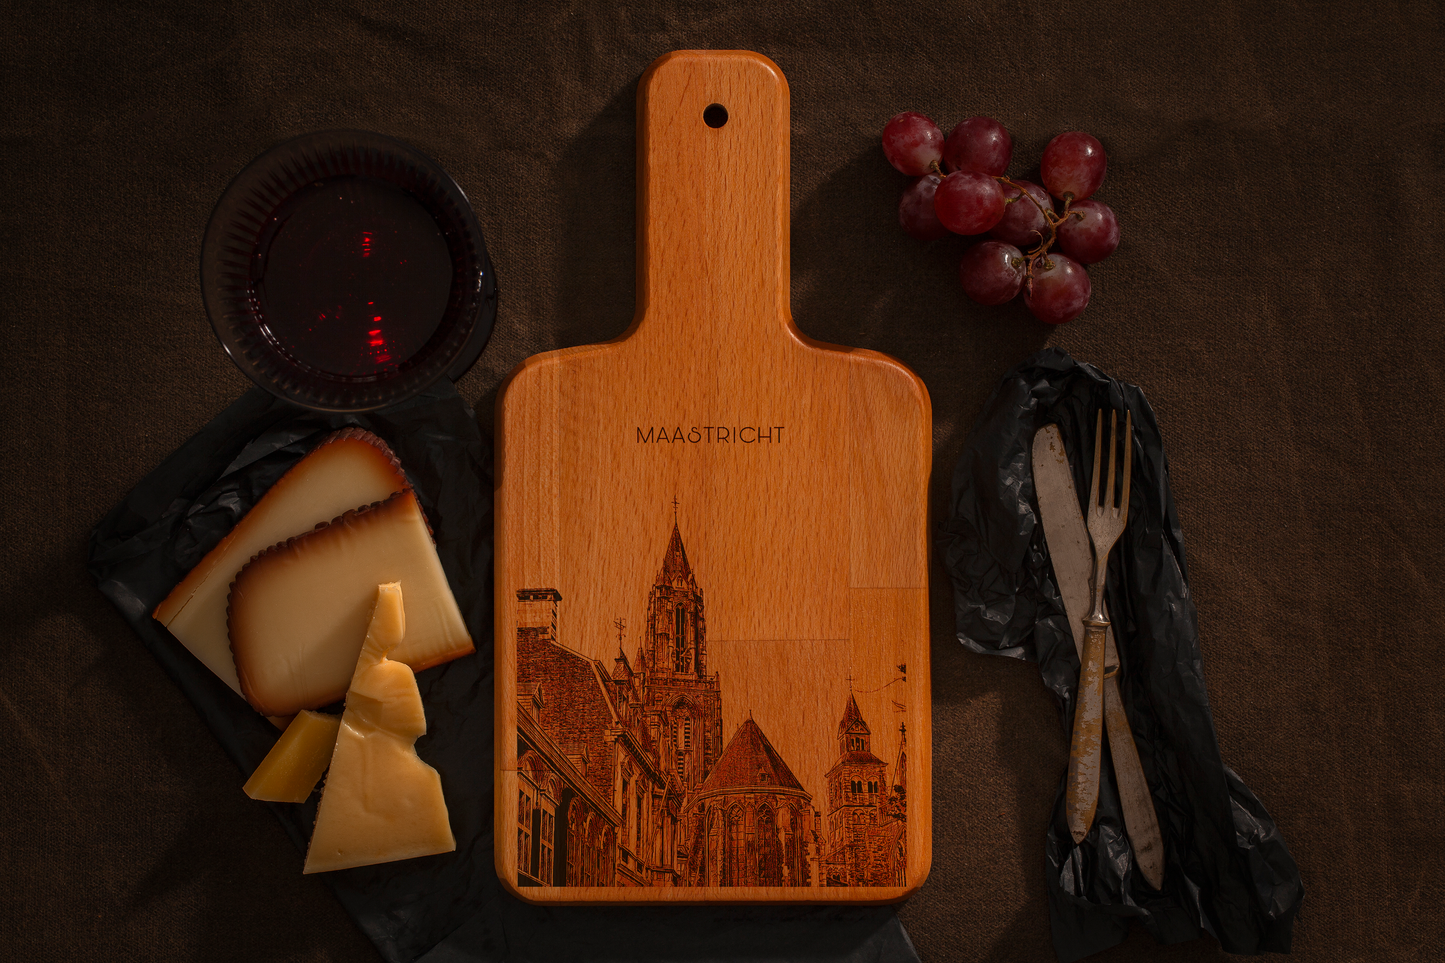 Maastricht, Sint-Janskerk, cheese board, main front